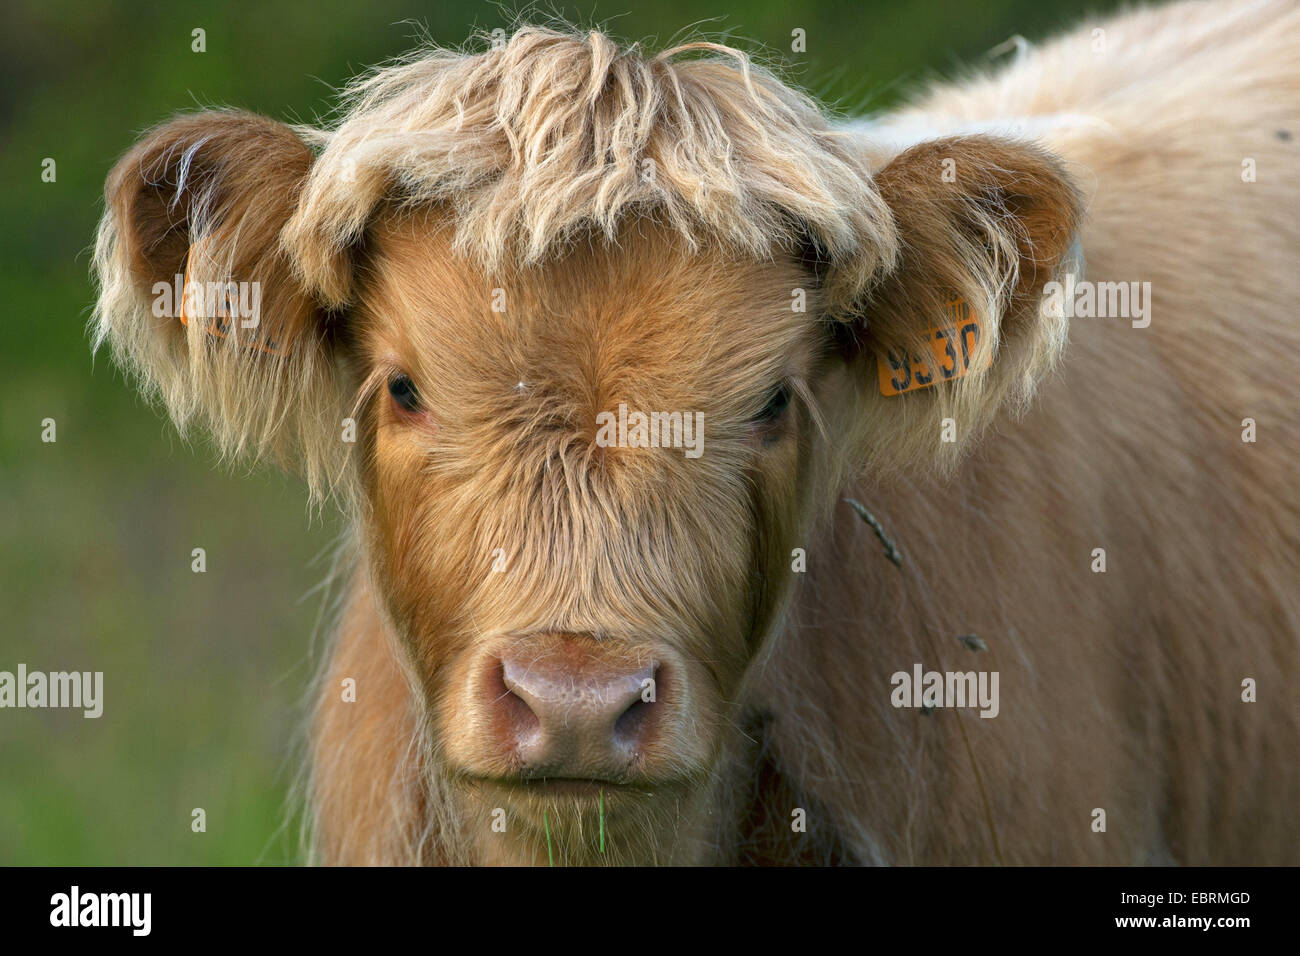 Scottish Highland Cattle (Bos primigenius f. taurus), calf, portrait, Belgium Stock Photo